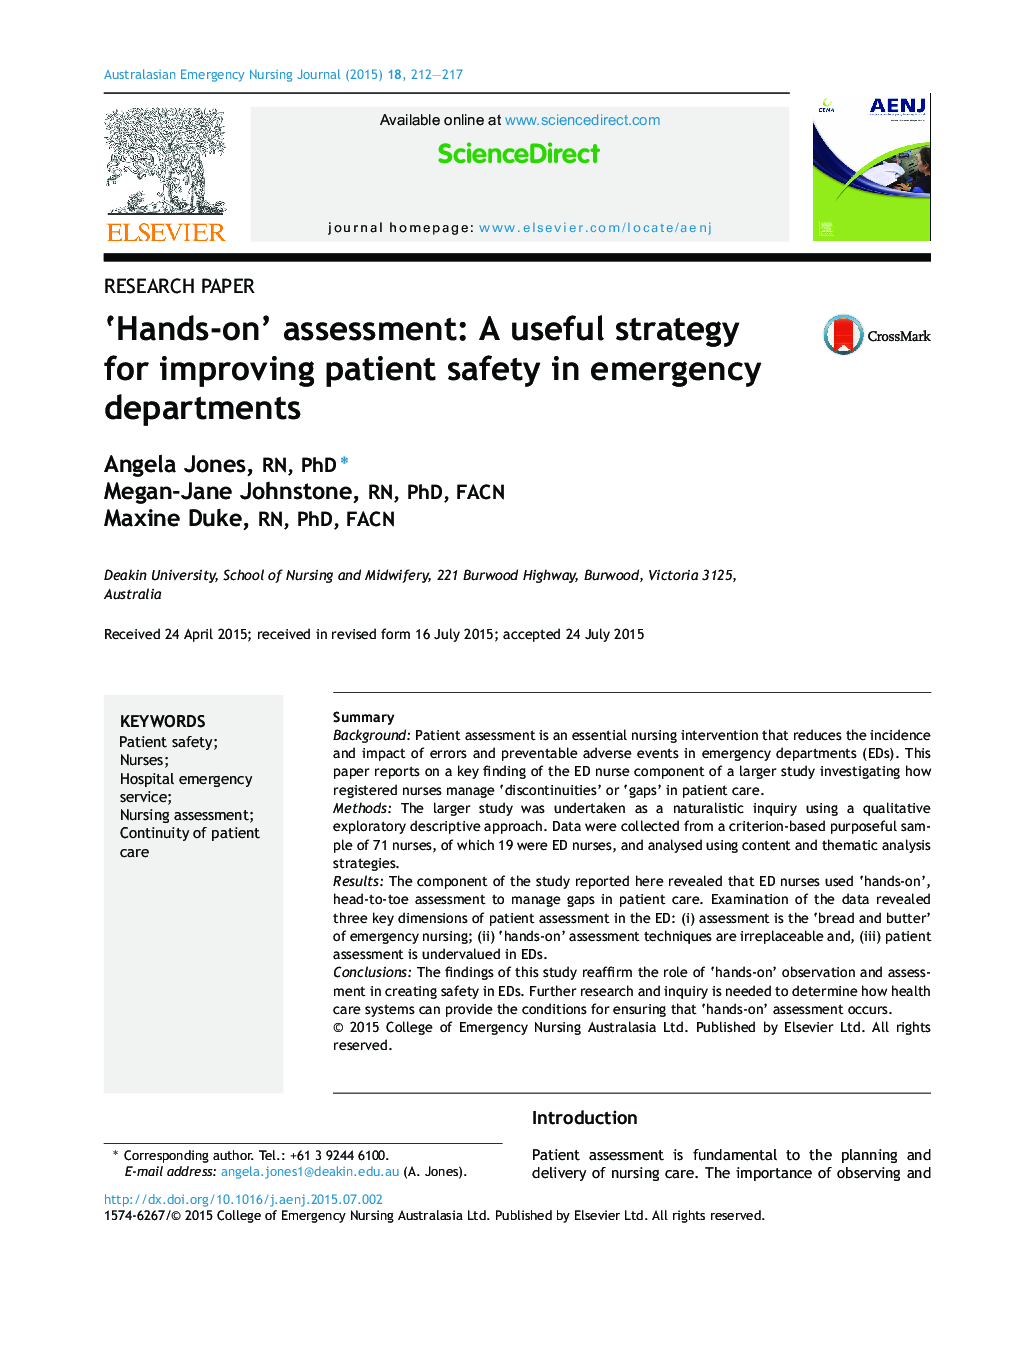 ارزیابی کنشی: یک استراتژی مفید برای بهبود ایمنی بیماران در بخش اورژانس